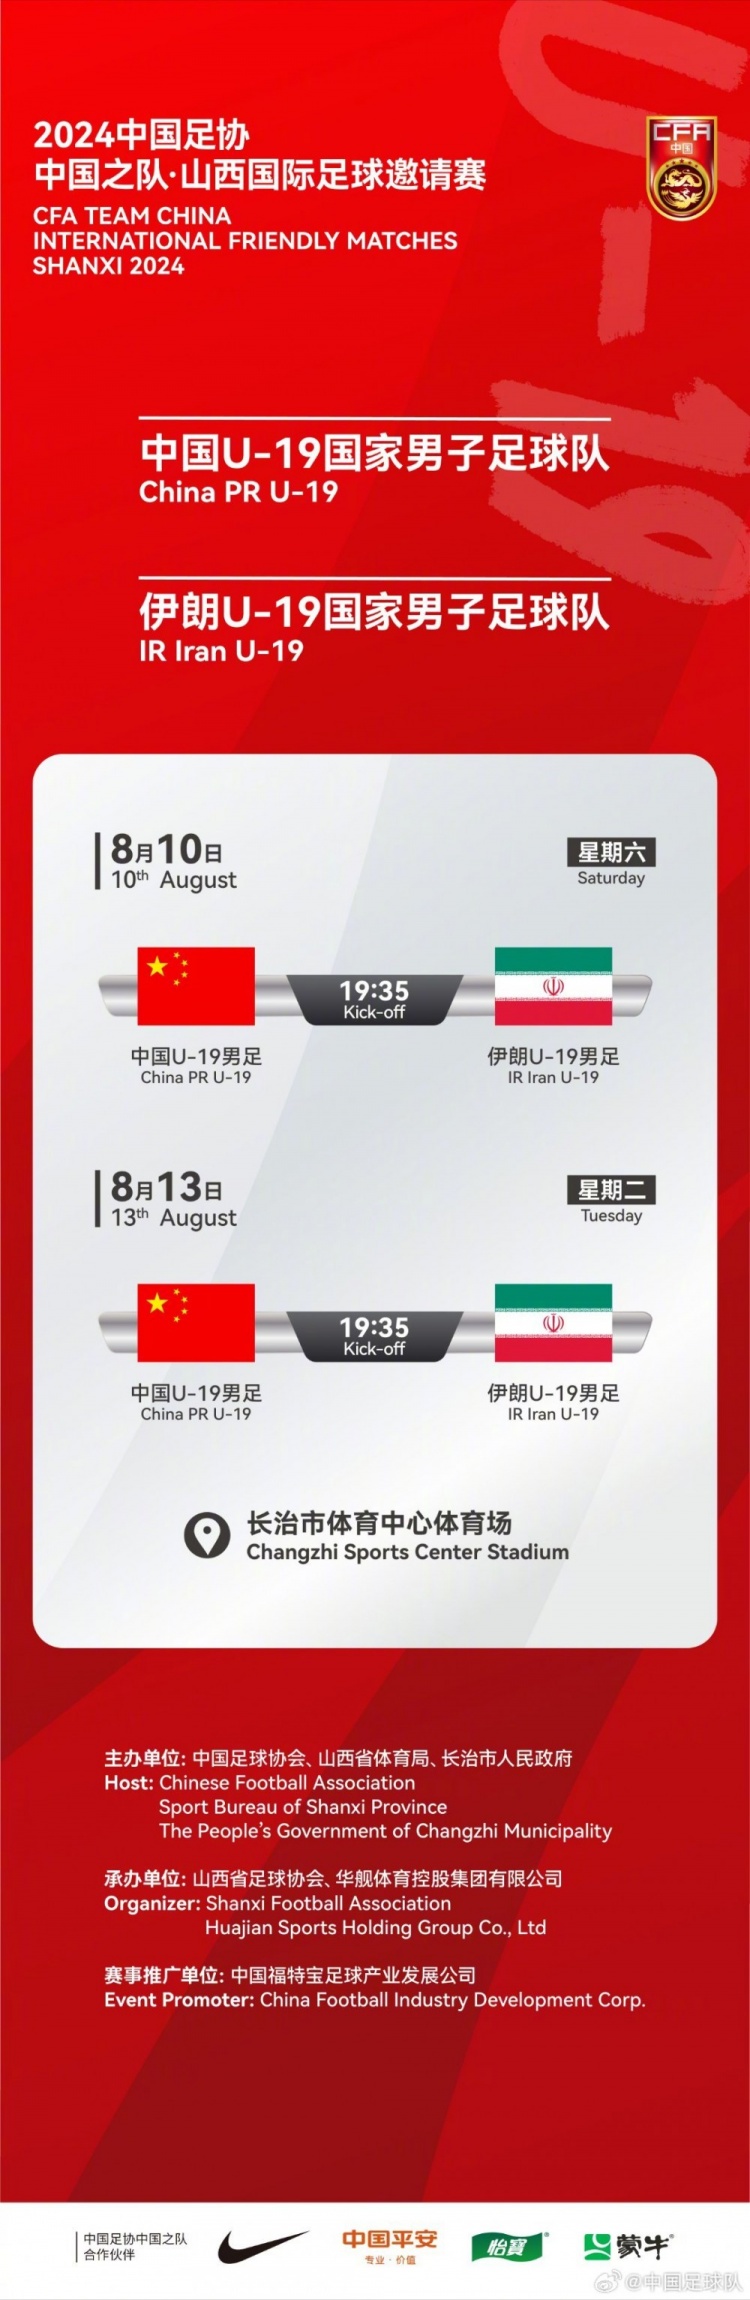 中国U19男足将与伊朗U19队进行热身赛 